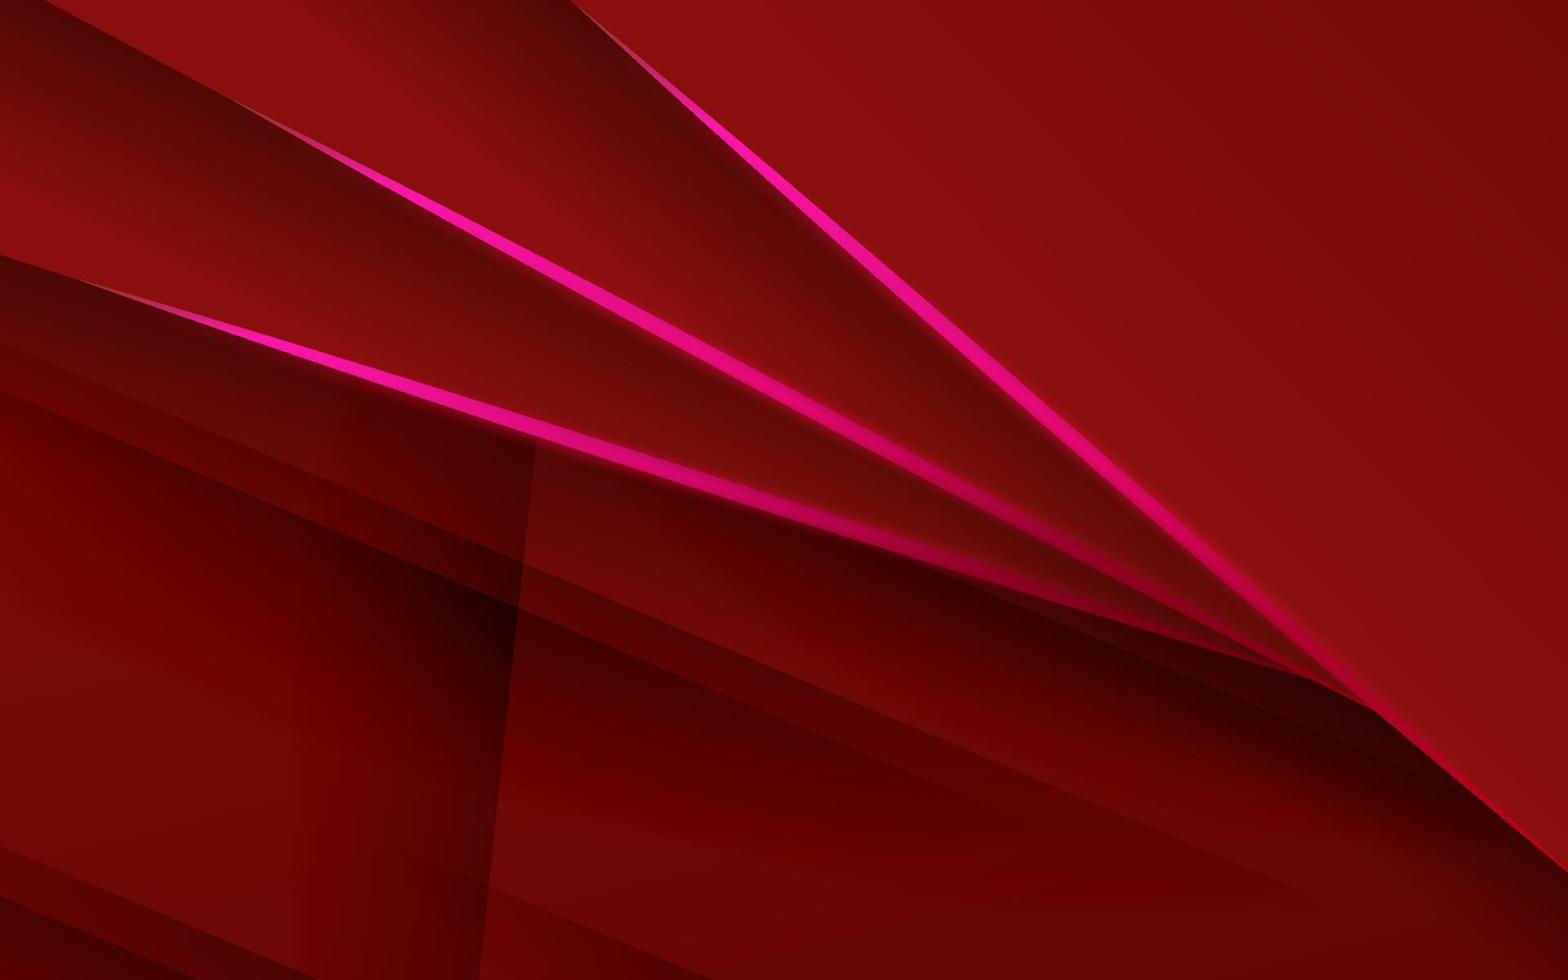 fondo rojo abstracto vector